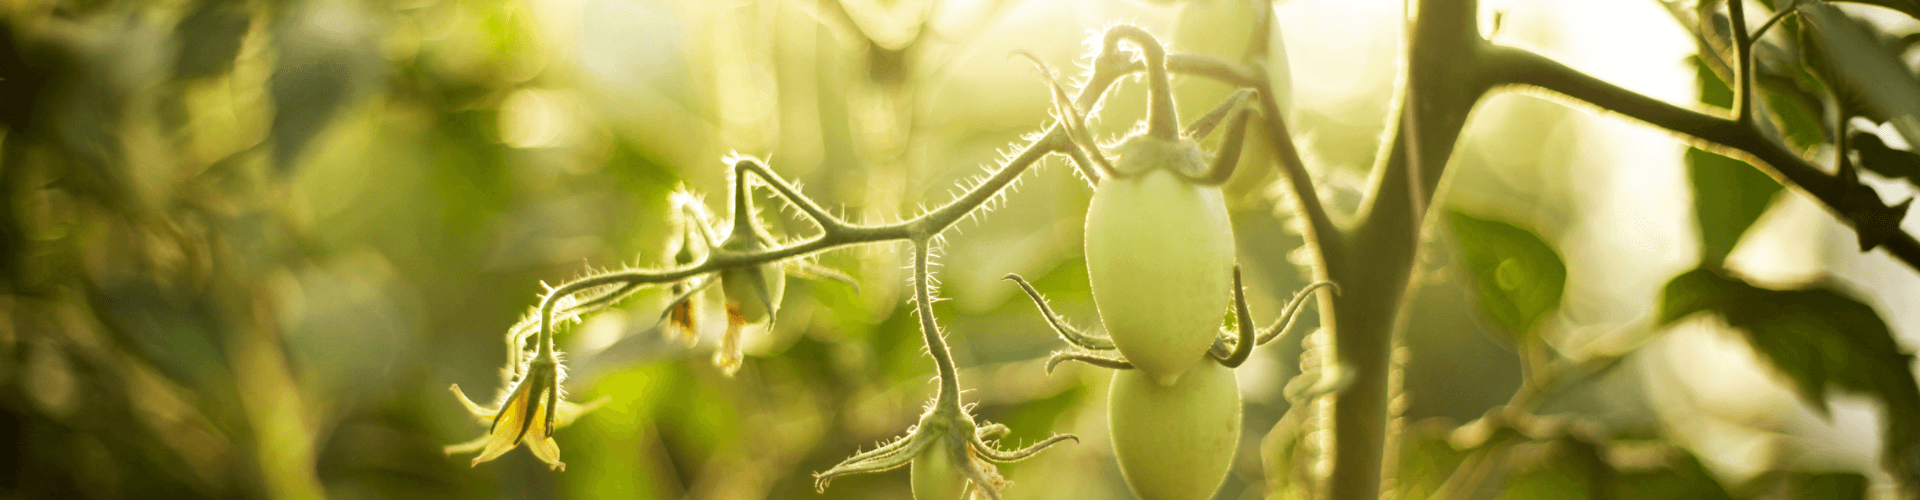 7 conseils pour réussir ses semis de tomates Blog - Dr. Jonquille & Mr. Ail